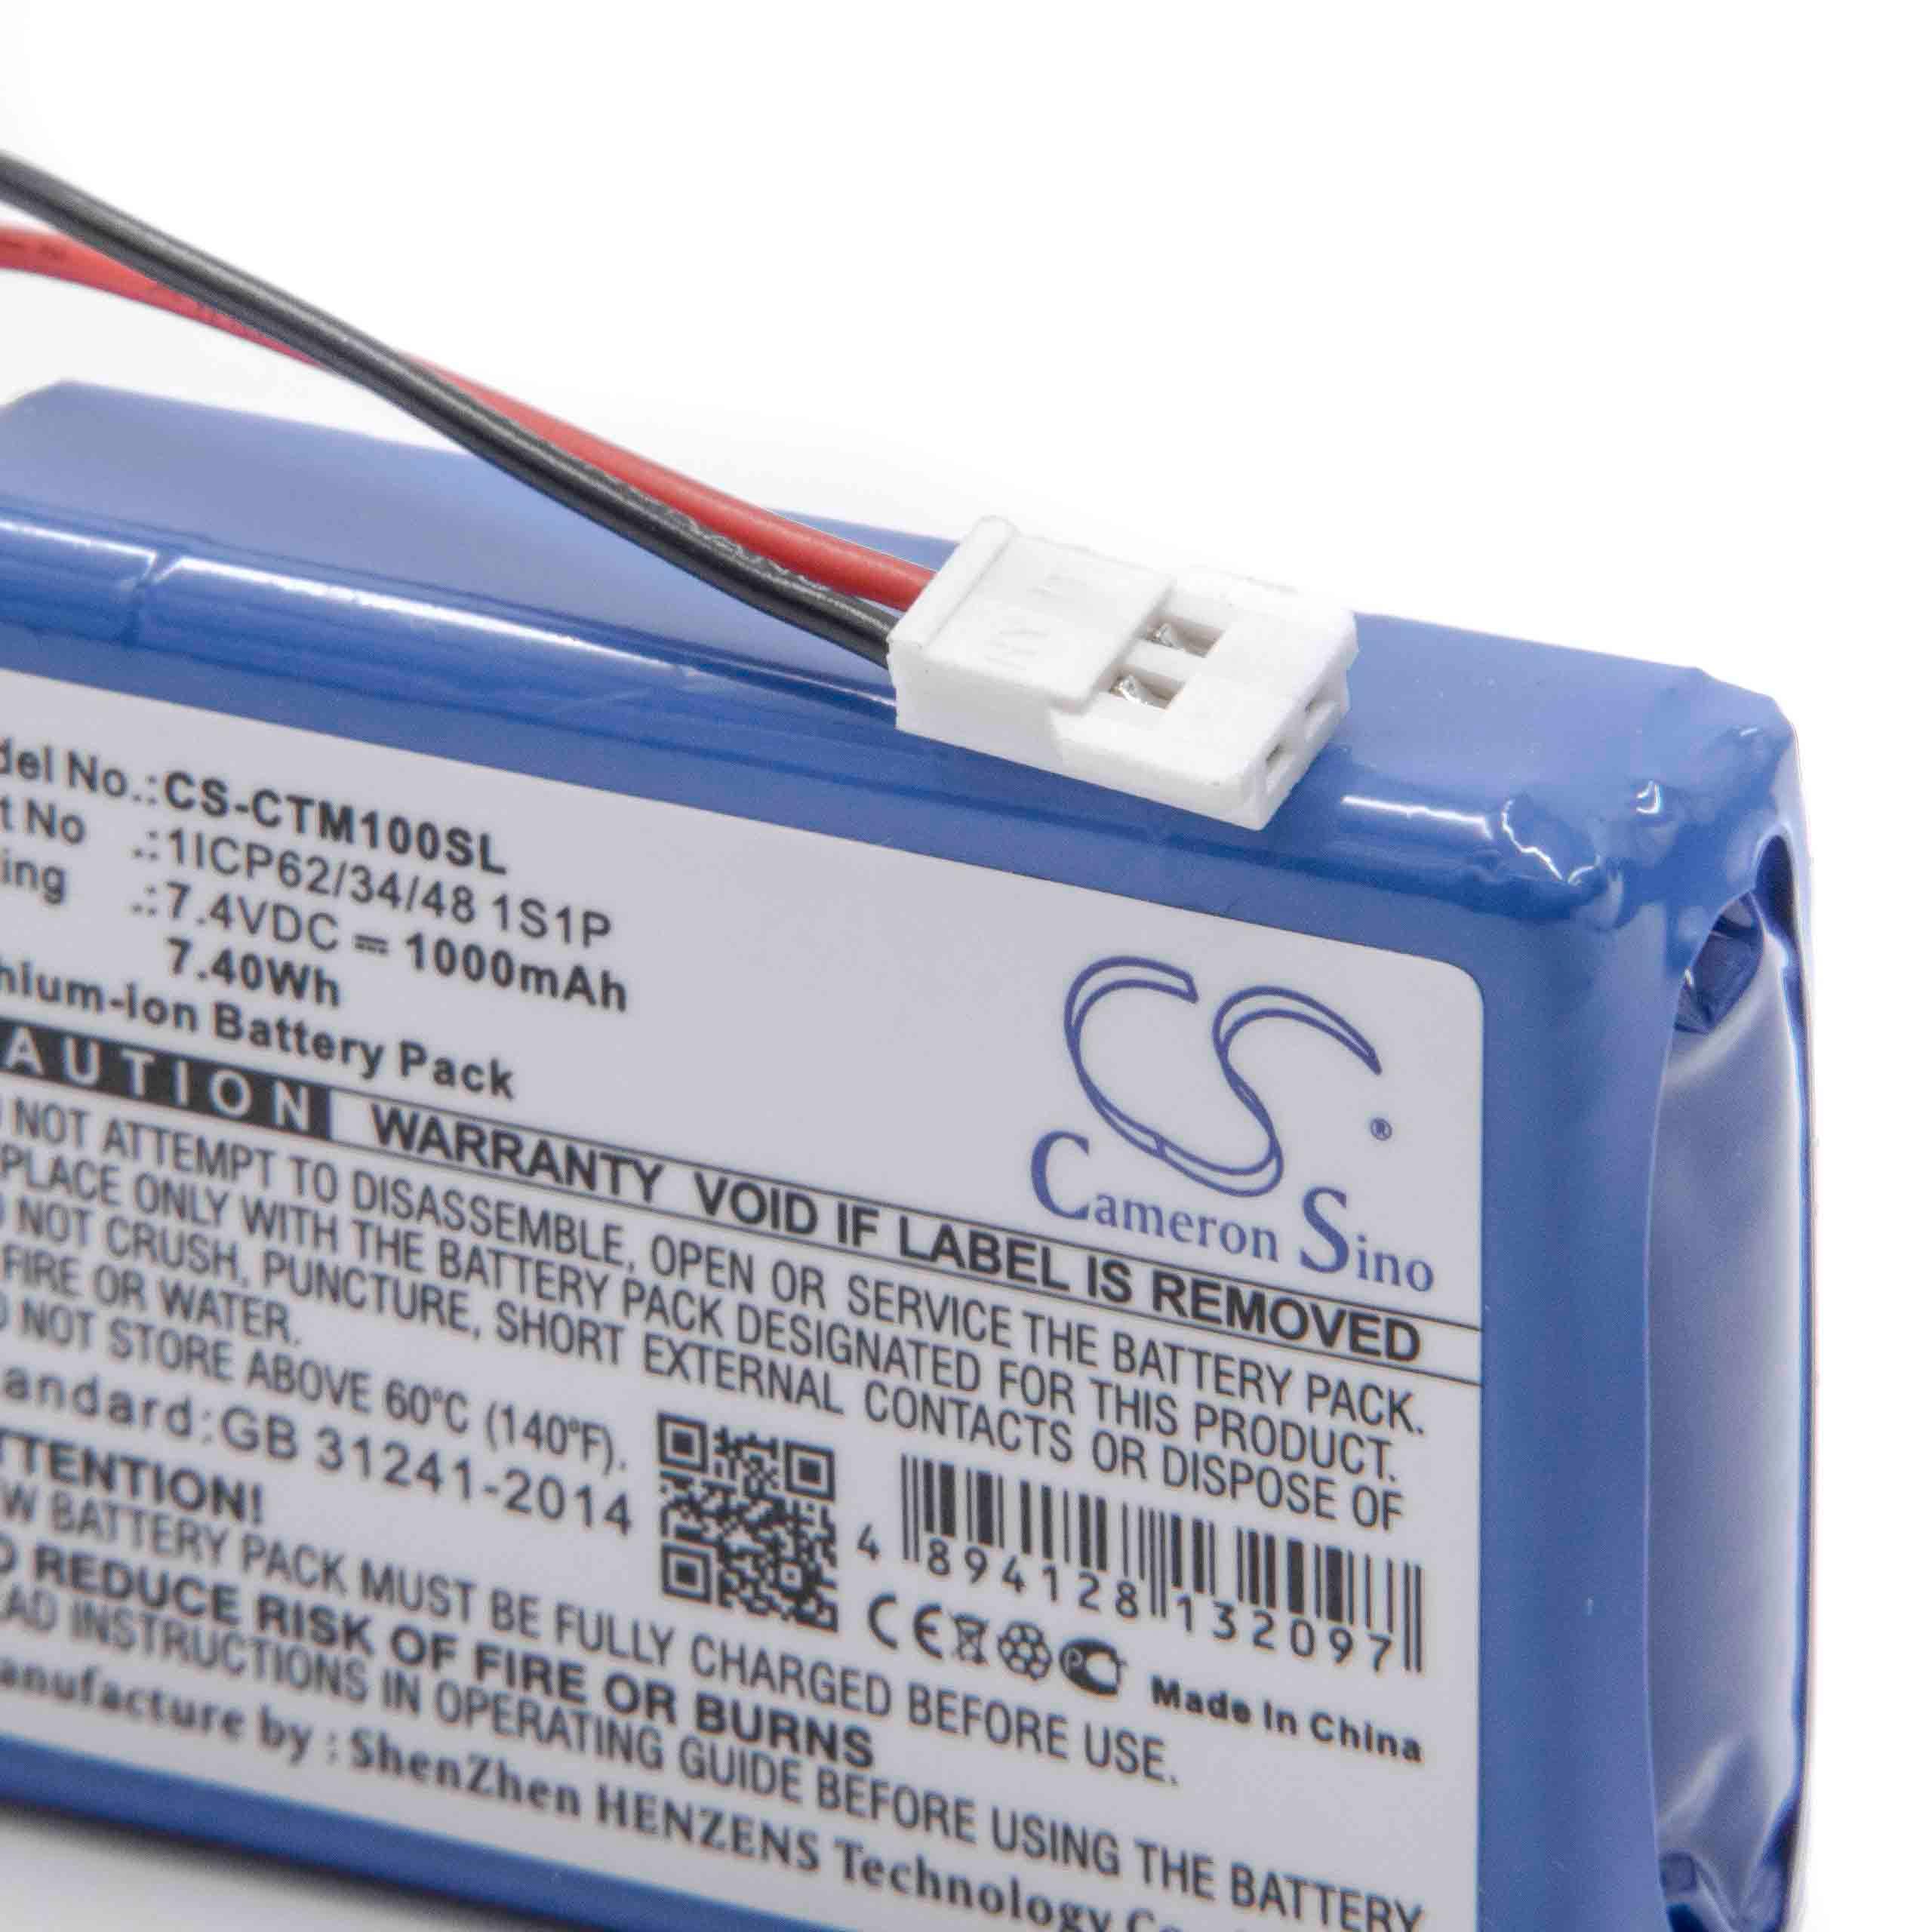 Batterie remplace CTMS 1ICP62/34/48 1S1P pour détecteur de faux billets - 1000mAh 7,4V Li-ion